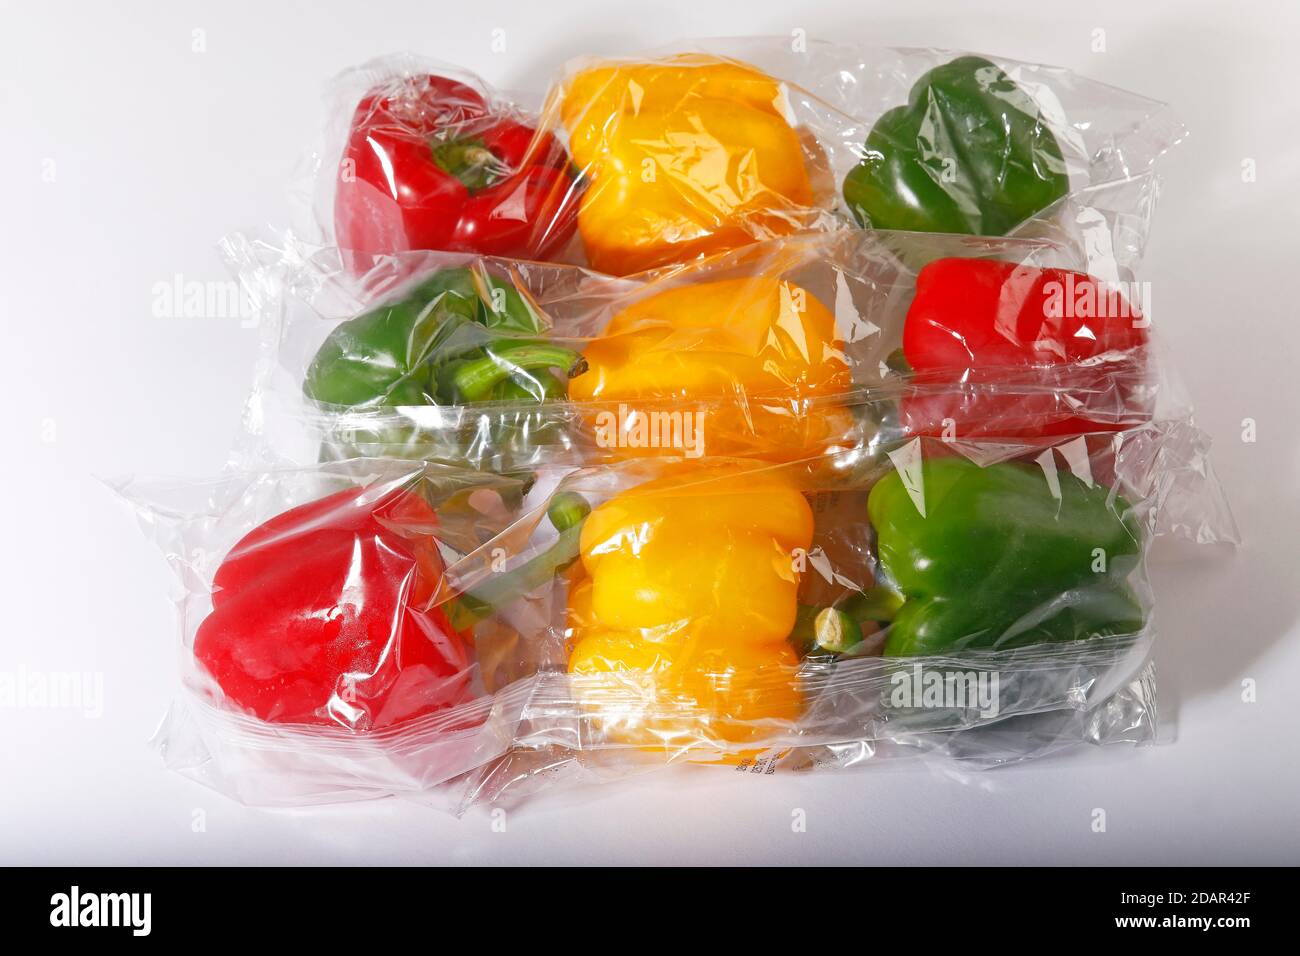 Rosso, giallo e i peperoni verdi (Capsicum annuum) dal supermercato avvolti in una pellicola termocontrattile in plastica, verdure in un imballaggio plastico, rifiuti in plastica Foto Stock